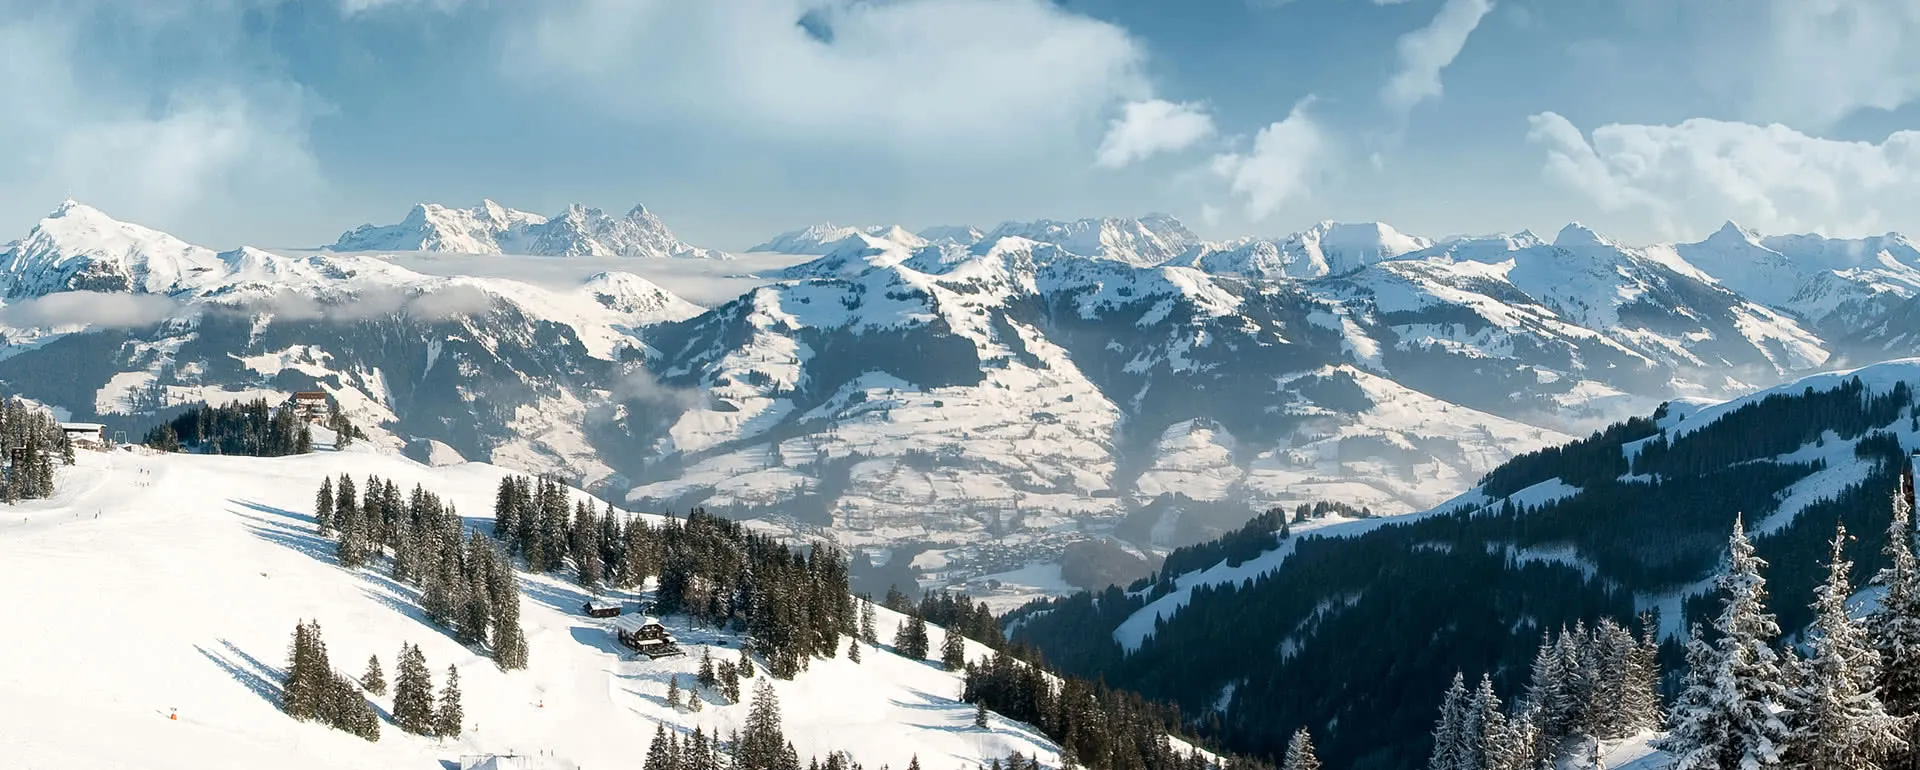 Kirchberg in Tirol panorama image